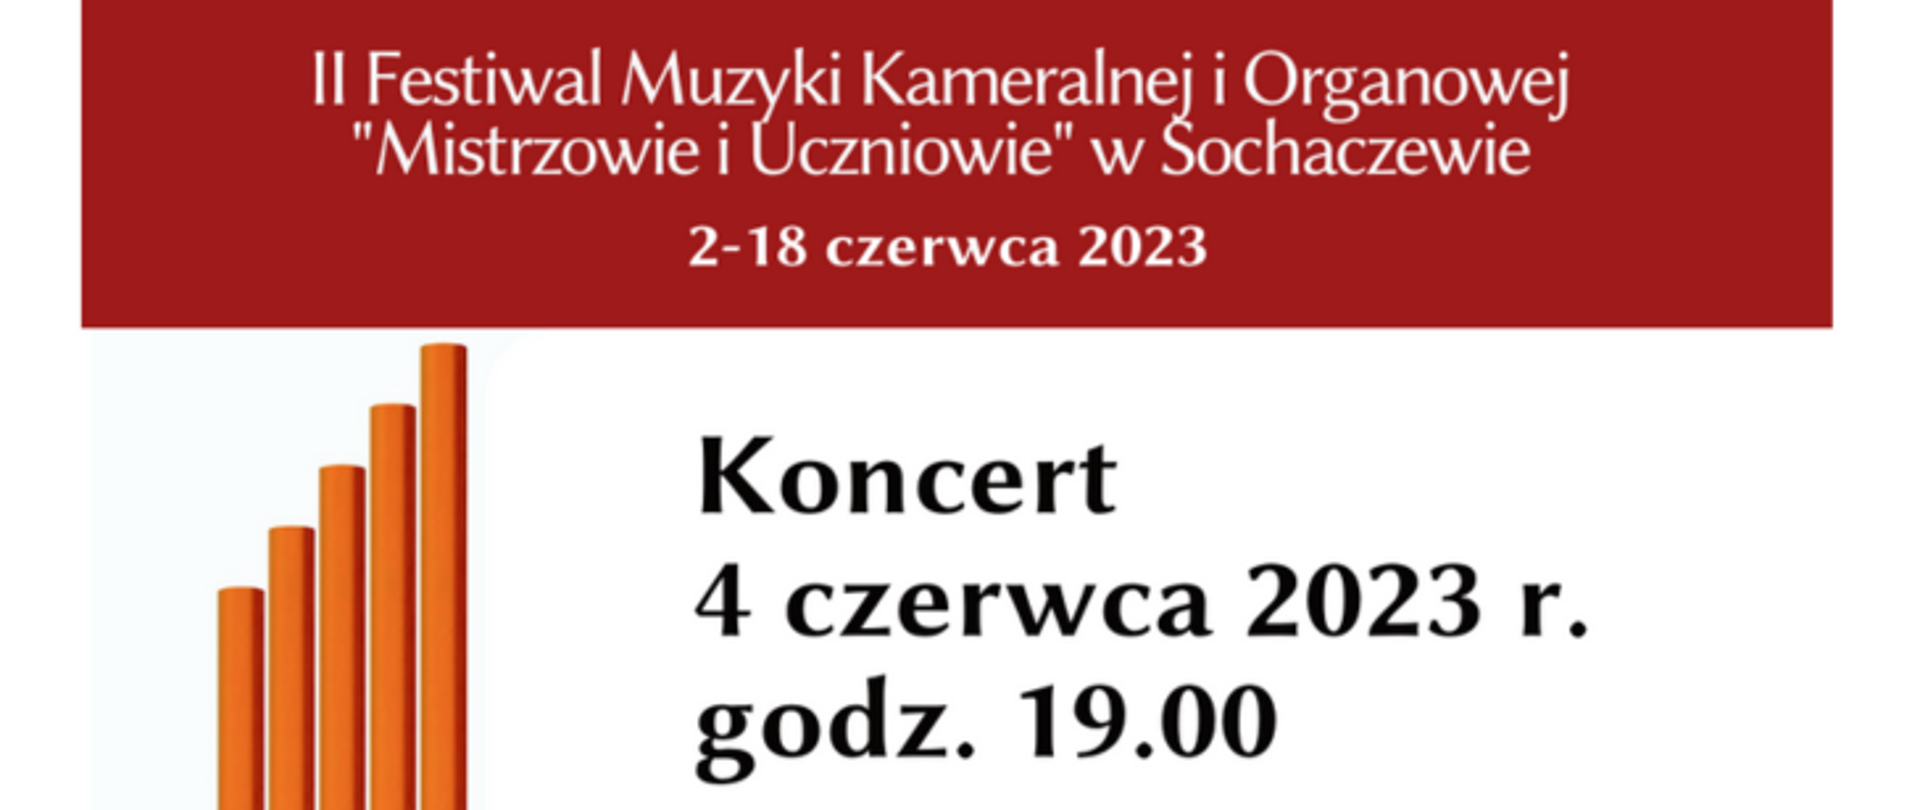 Informacja na czerwonym tle biały napis" II Festiwal Muzyki Kameralnej i Organowej "Mistrzowie i Uczniowie" w Sochaczewie, 2-18 czerwca 2023 r. Koncert 4 czerwca 2023 r. godz. 19.00